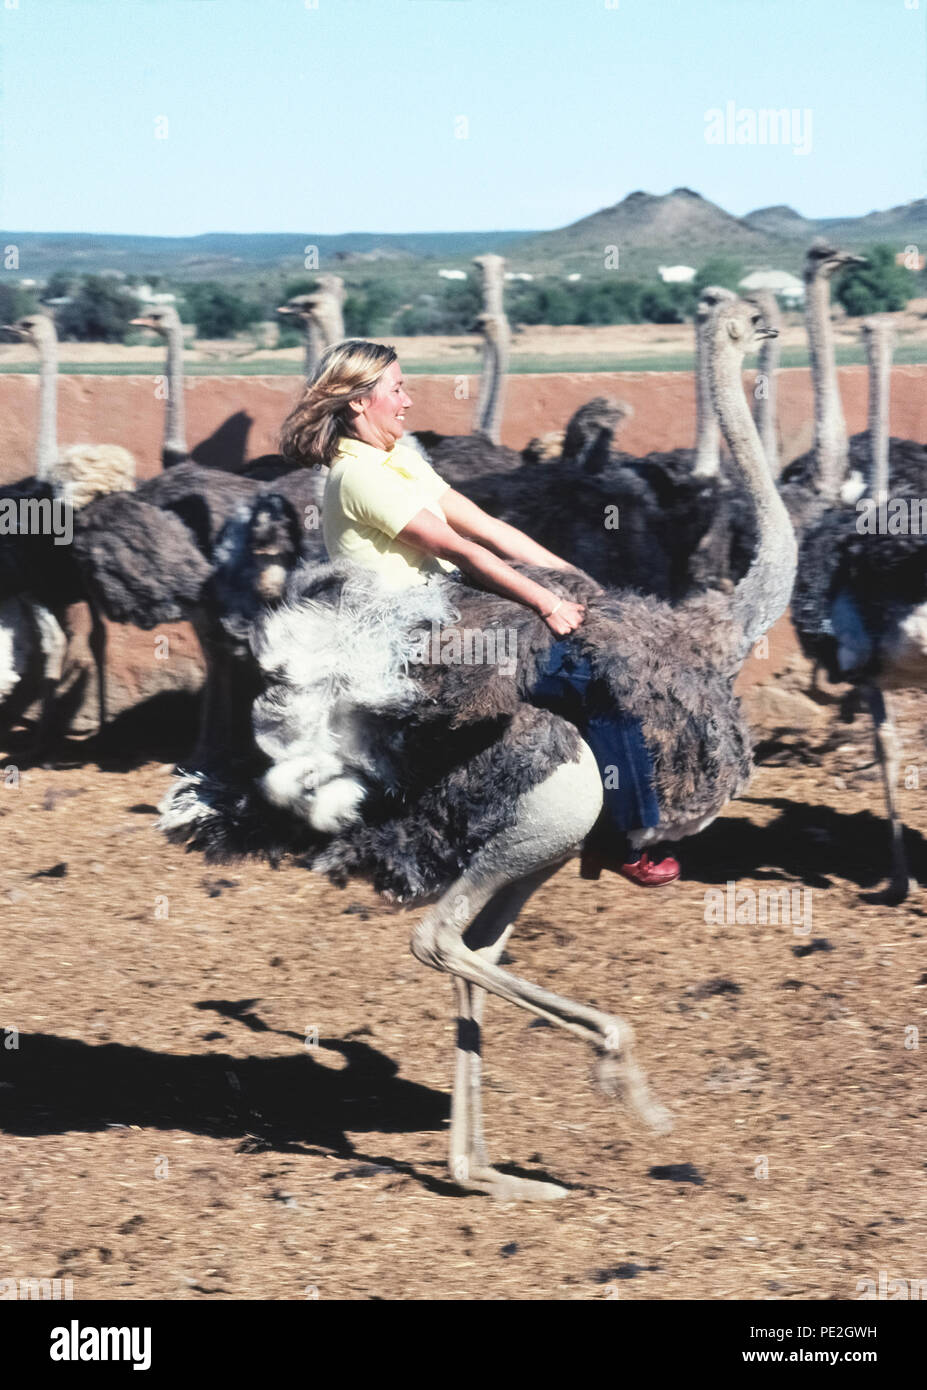 Eine weibliche Touristen hält fest an den Flügeln der Strauß (Struthio camelus), wie sie reitet es hinter einer Herde der größten Vögel der Welt bei einer Straußenfarm in der Nähe von Oudtshoorn, Südafrika Bareback. Solche Betriebe in den späten 1800er und frühen 1900er Jahre, als die ausgefallenen Federn dieser flugunfähige Vögel in der Nachfrage, high-fashion Zubehör für wohlhabende Frauen waren, blühte. Heute ist die Bauernhöfe sind Sehenswürdigkeiten bietet dem Besucher die Möglichkeit, die schnell laufenden Tiere zu reiten und auch auf Ihre riesige Eier essen. Stockfoto